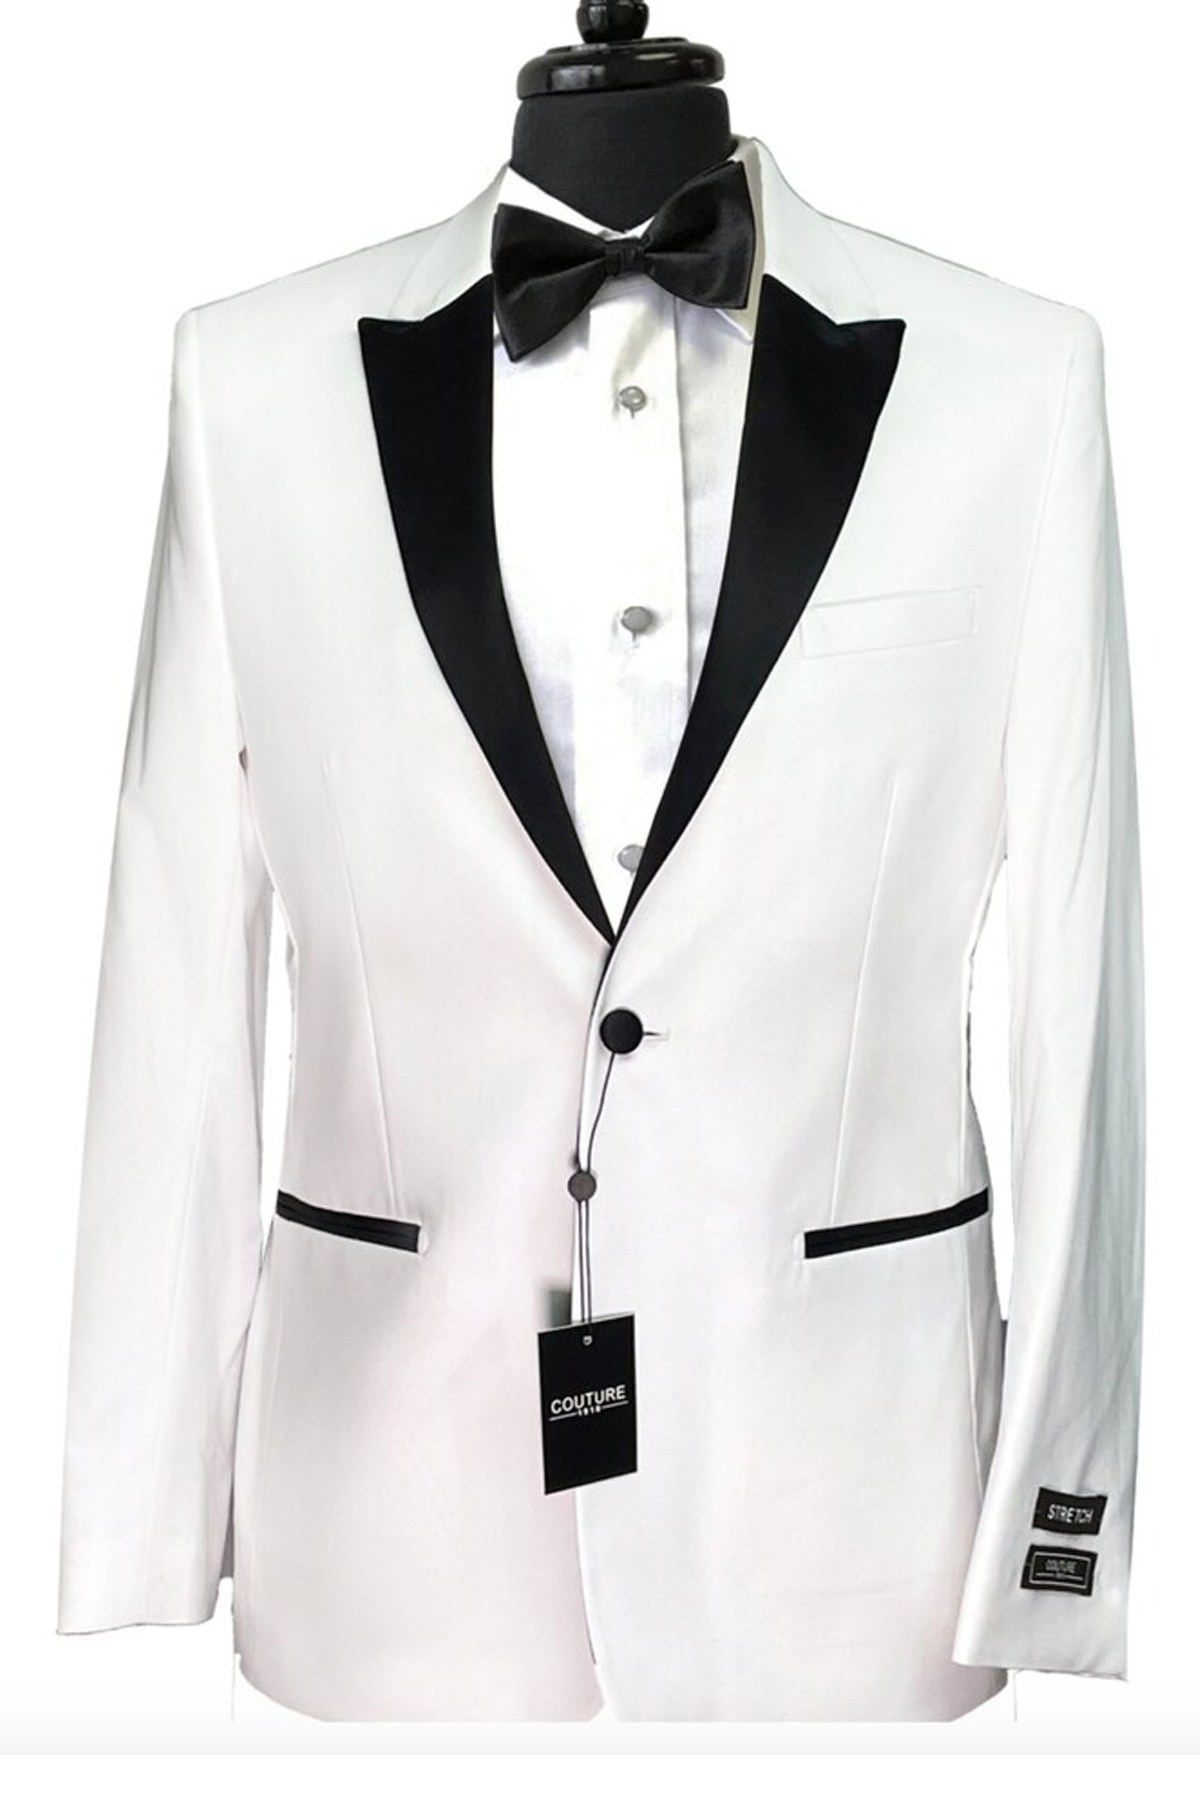 Stretch Blend White One Button Peak Tuxedo Jacket w Black Lapel